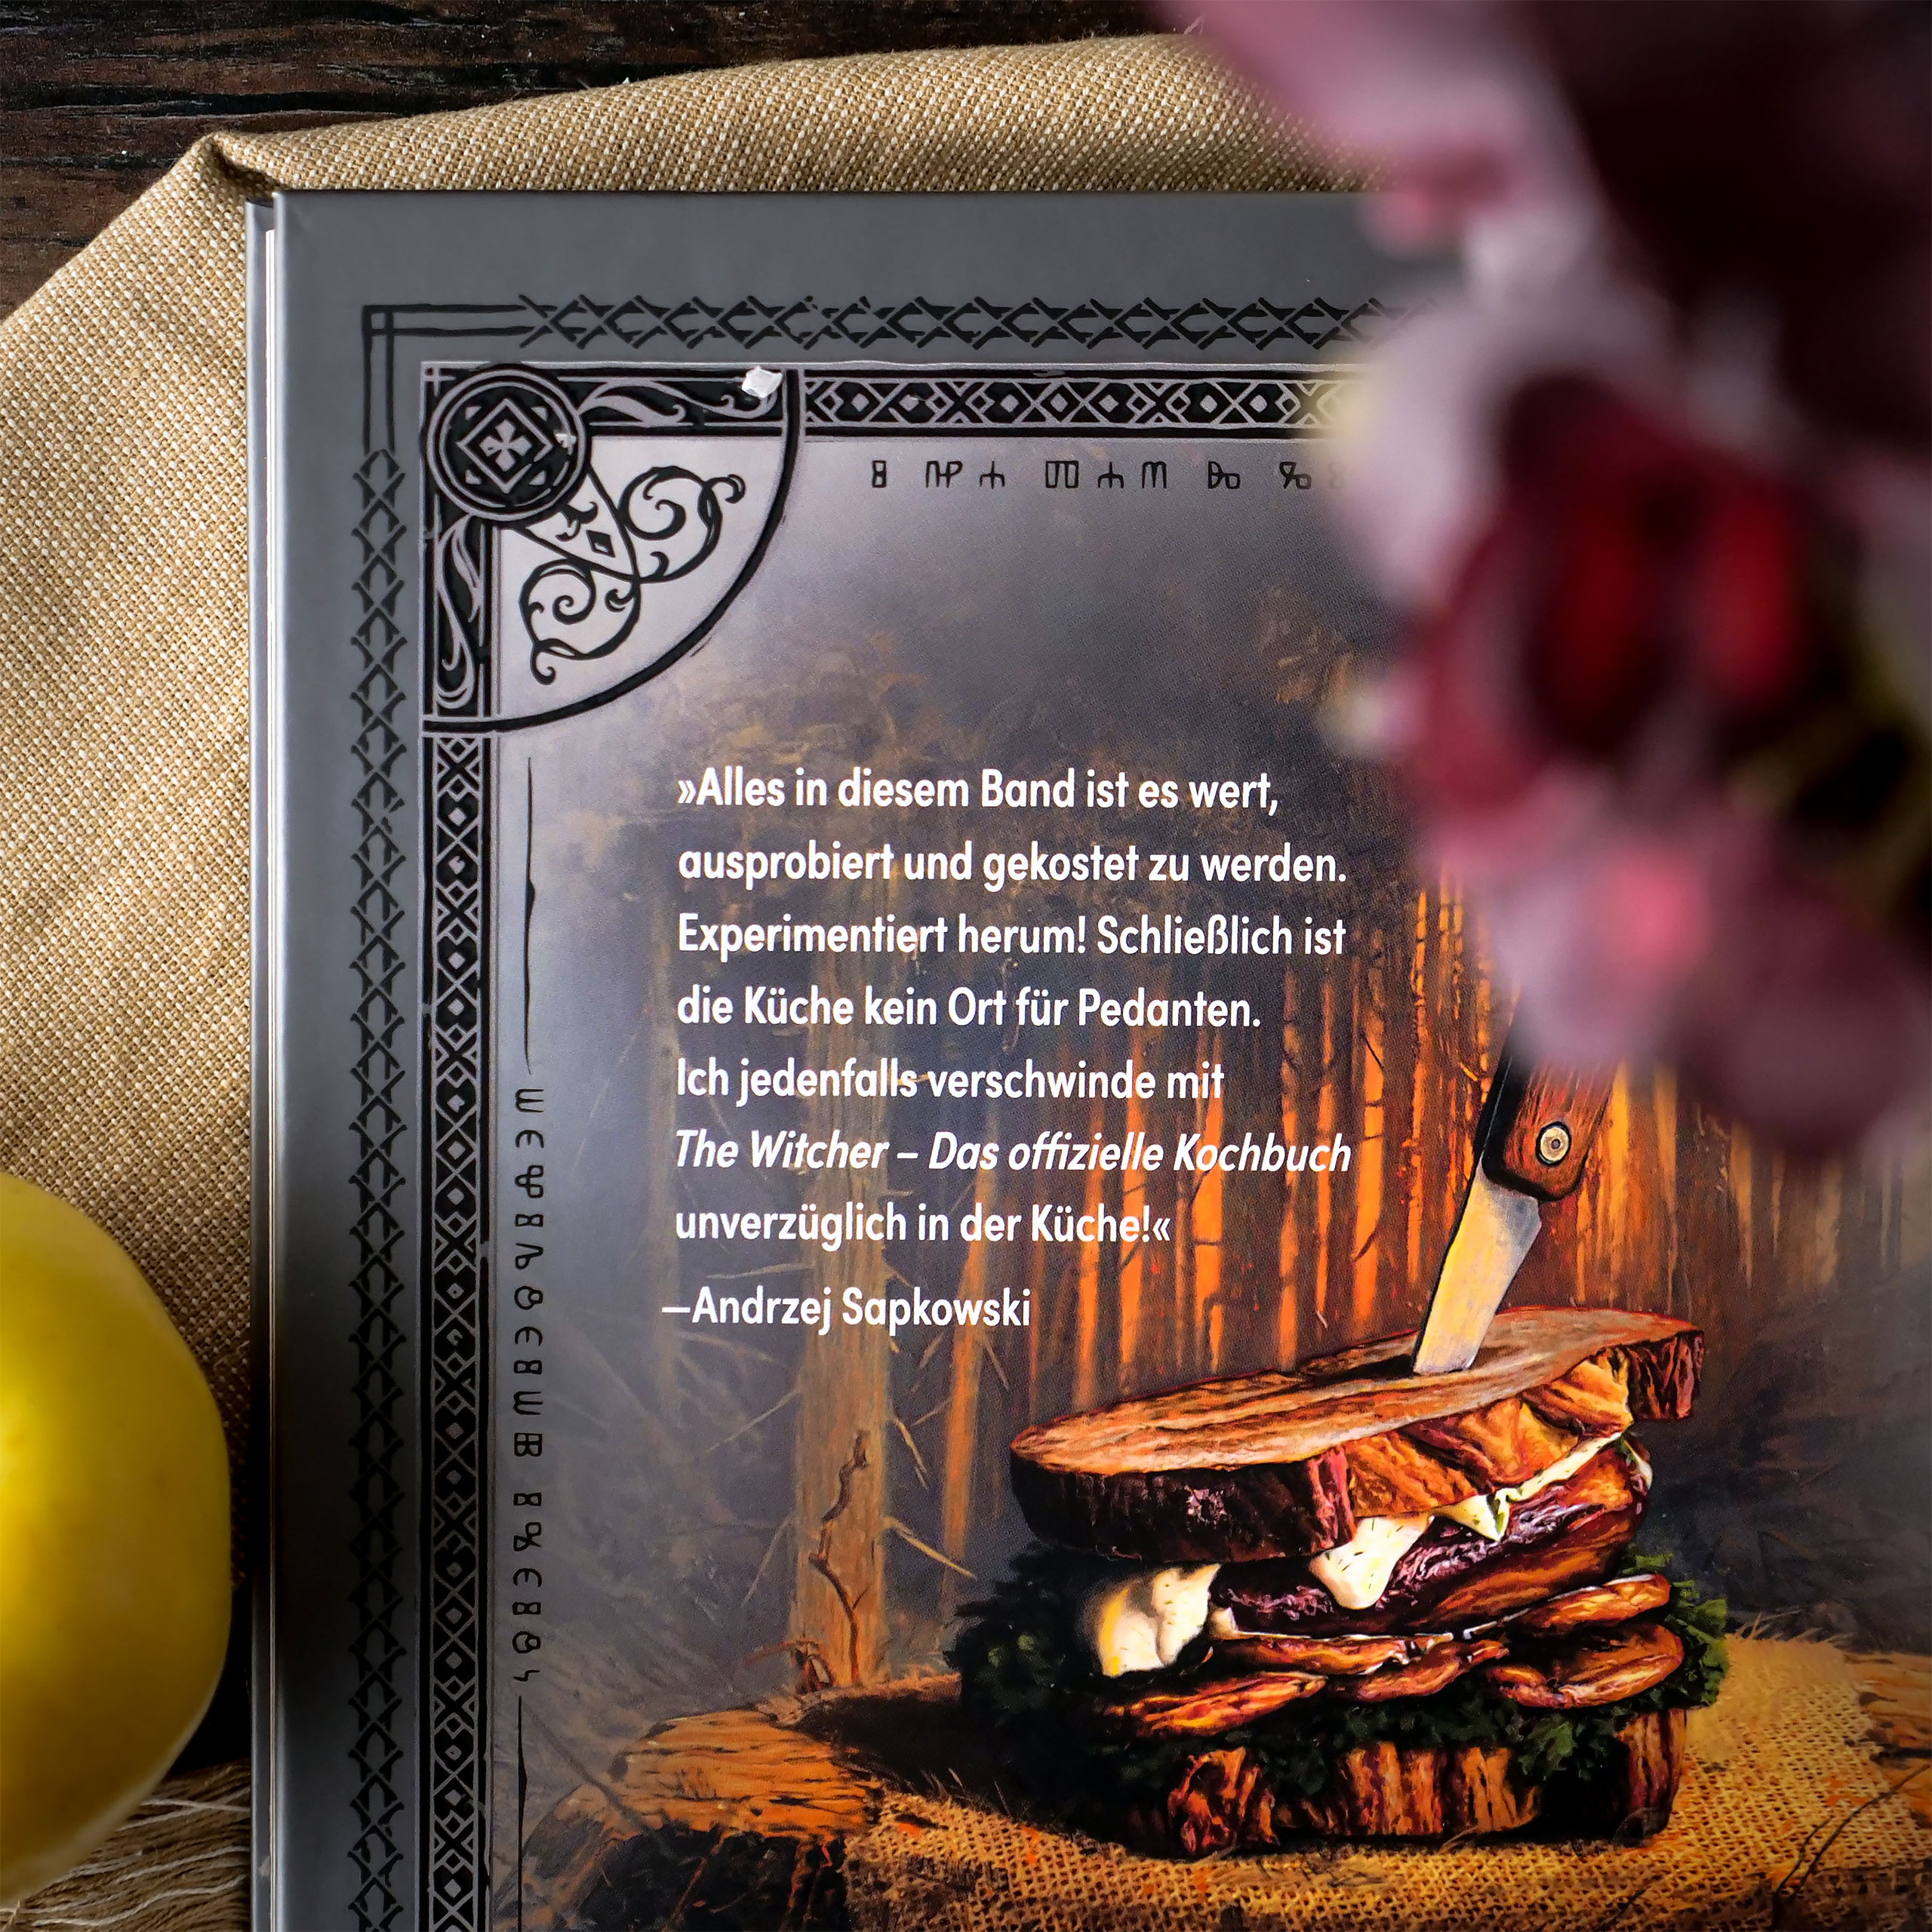 The Witcher - Het officiële kookboek